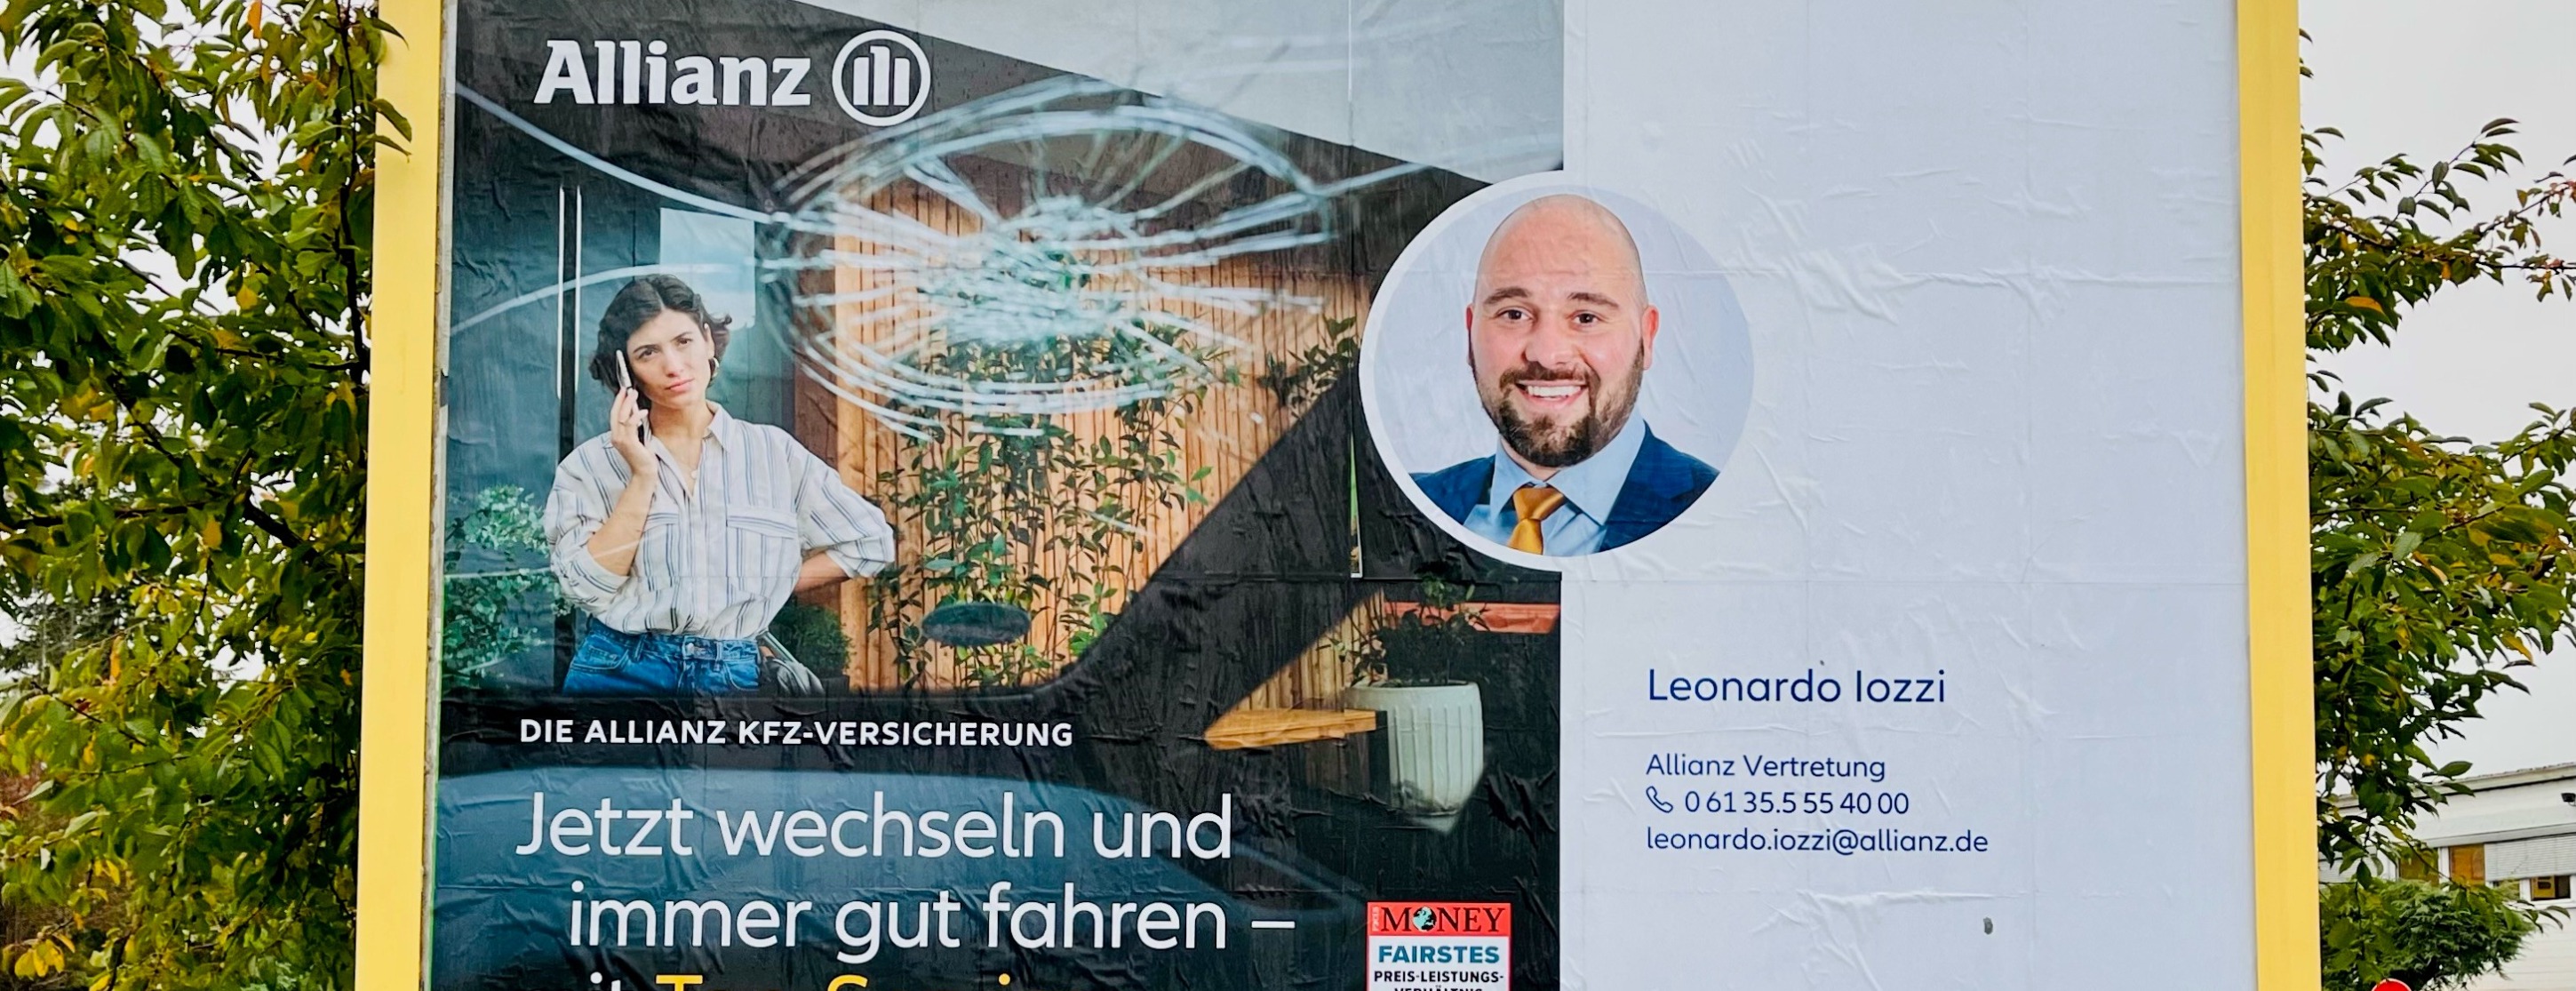 Allianz Versicherung Leonardo Iozzi Nackenheim - Titelbild